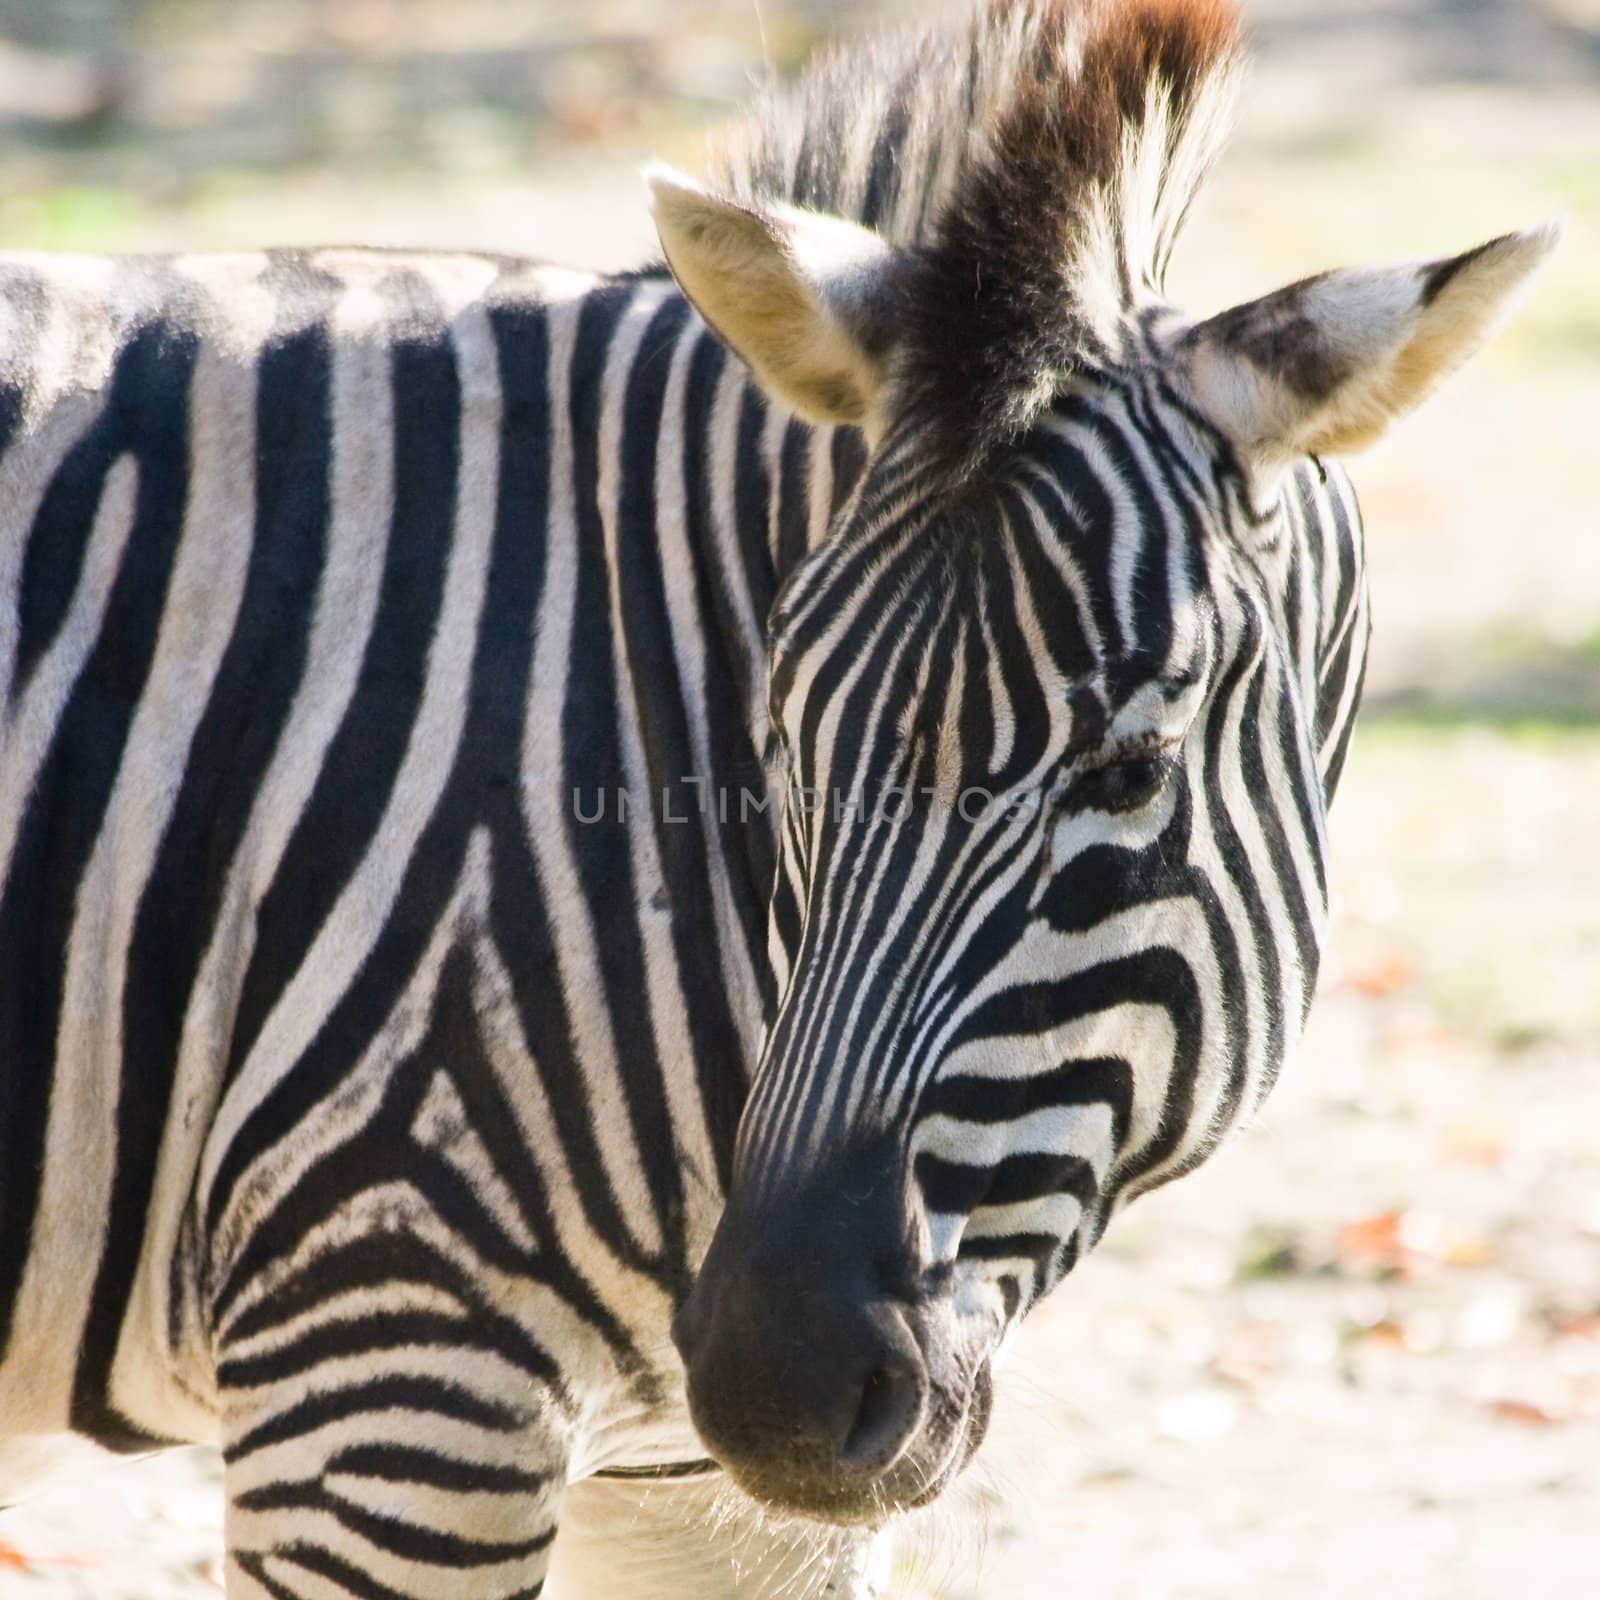 Zebra looking backward by Colette